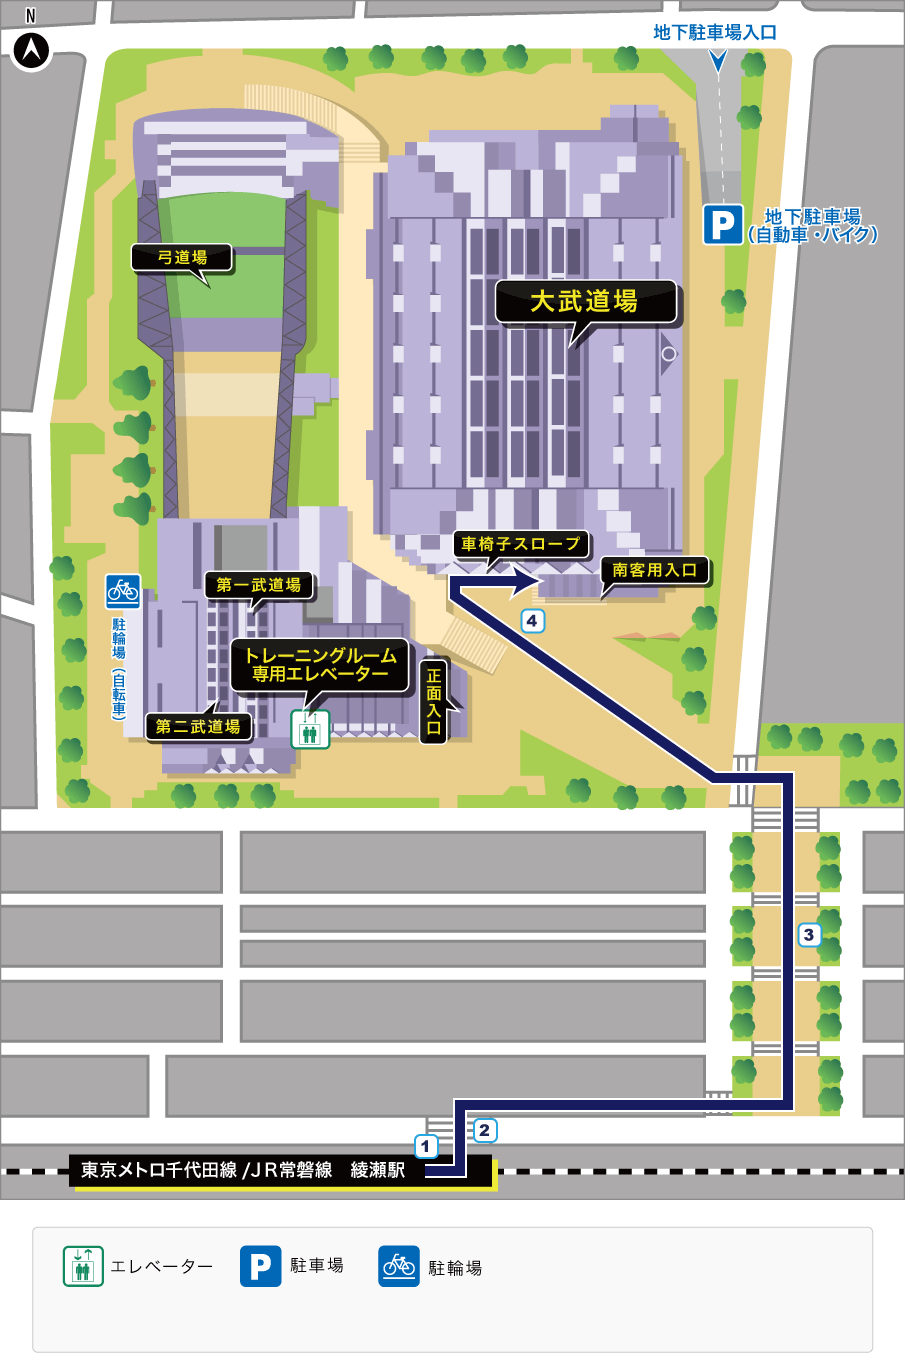 綾瀬駅から「大武道場」へのルート案内見取り図